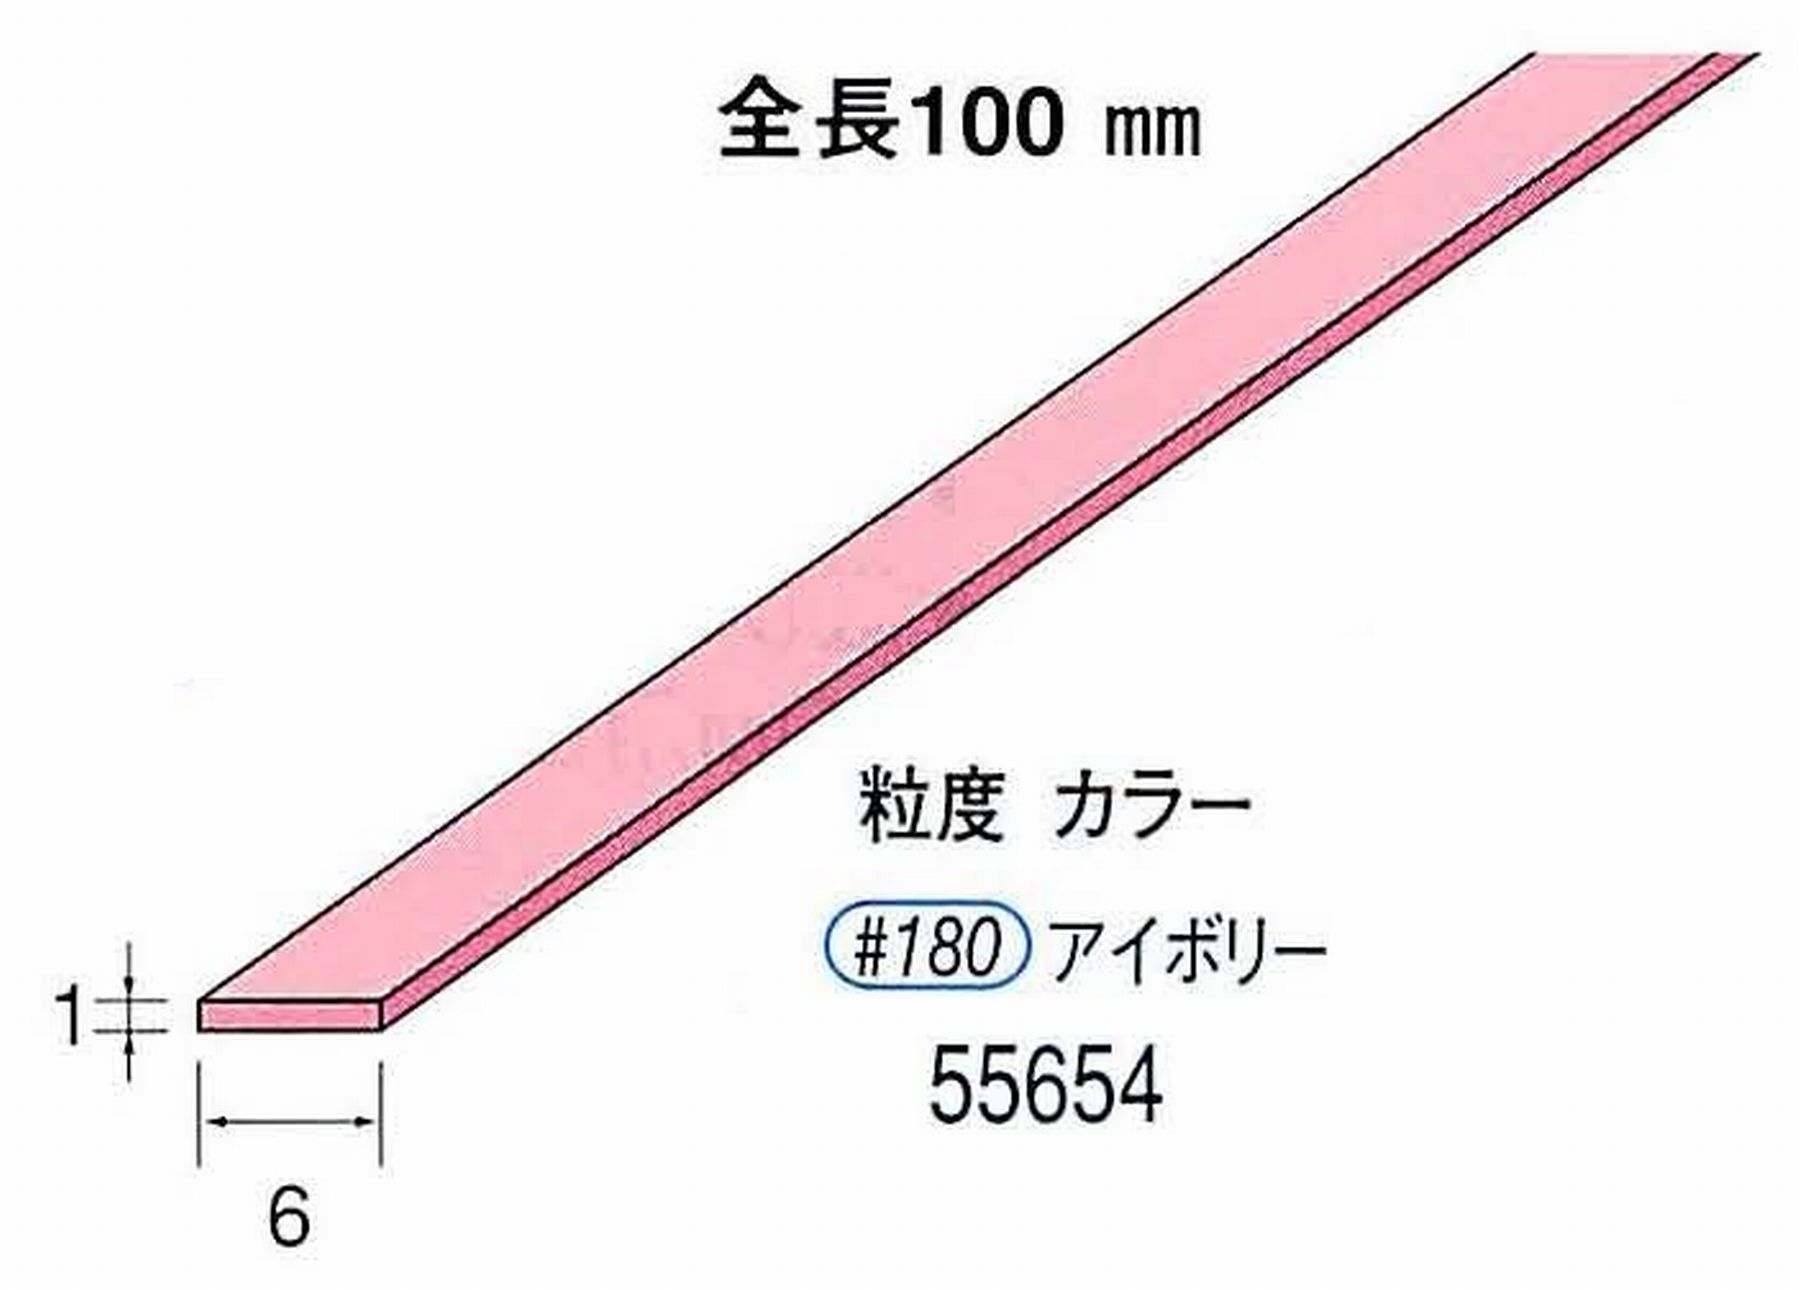 ナカニシ/NAKANISHI セラファイバー砥石 全長100mm アイボリー 55654